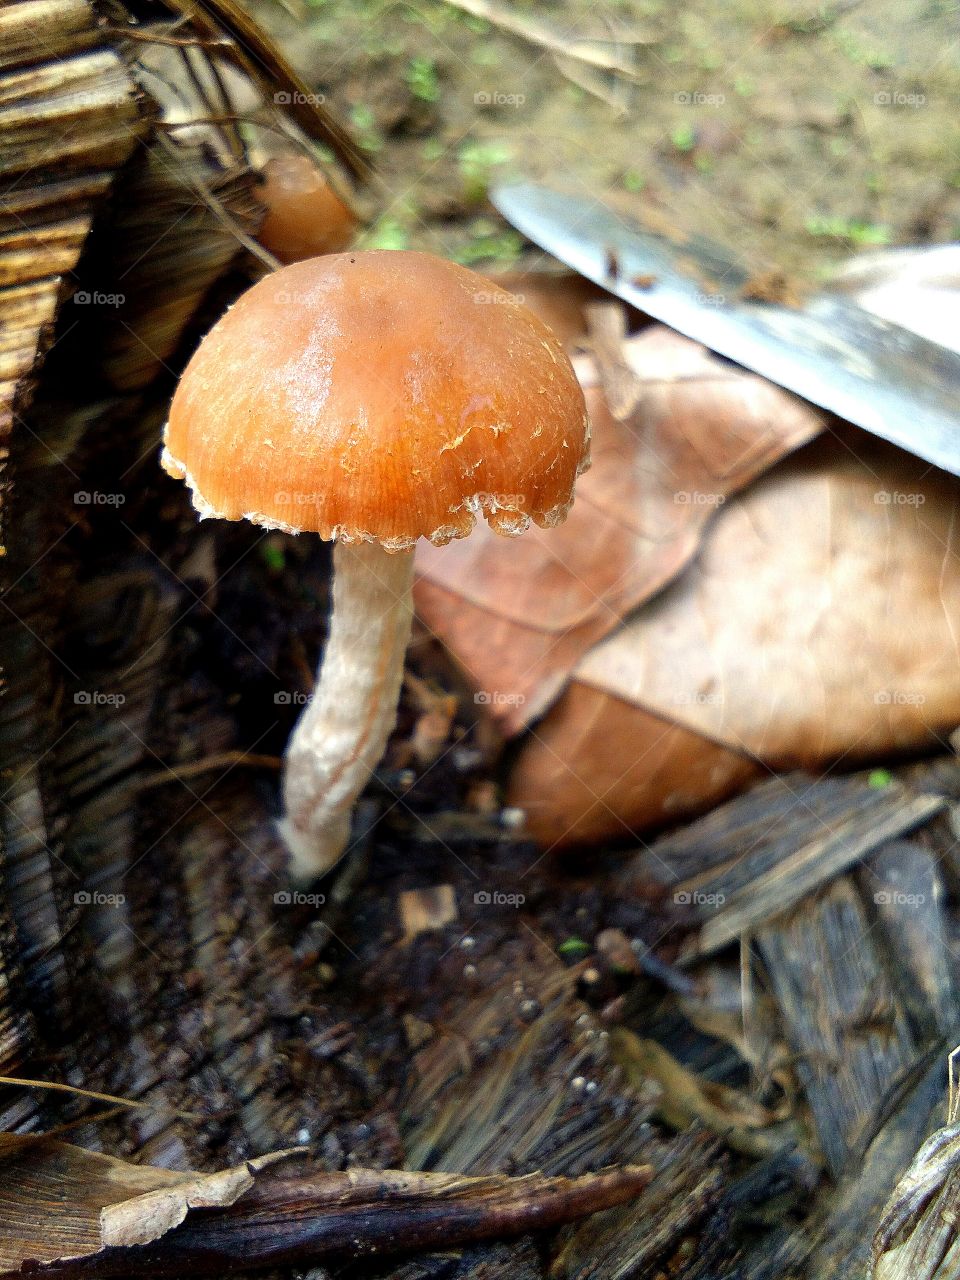 mushroom on banana tree